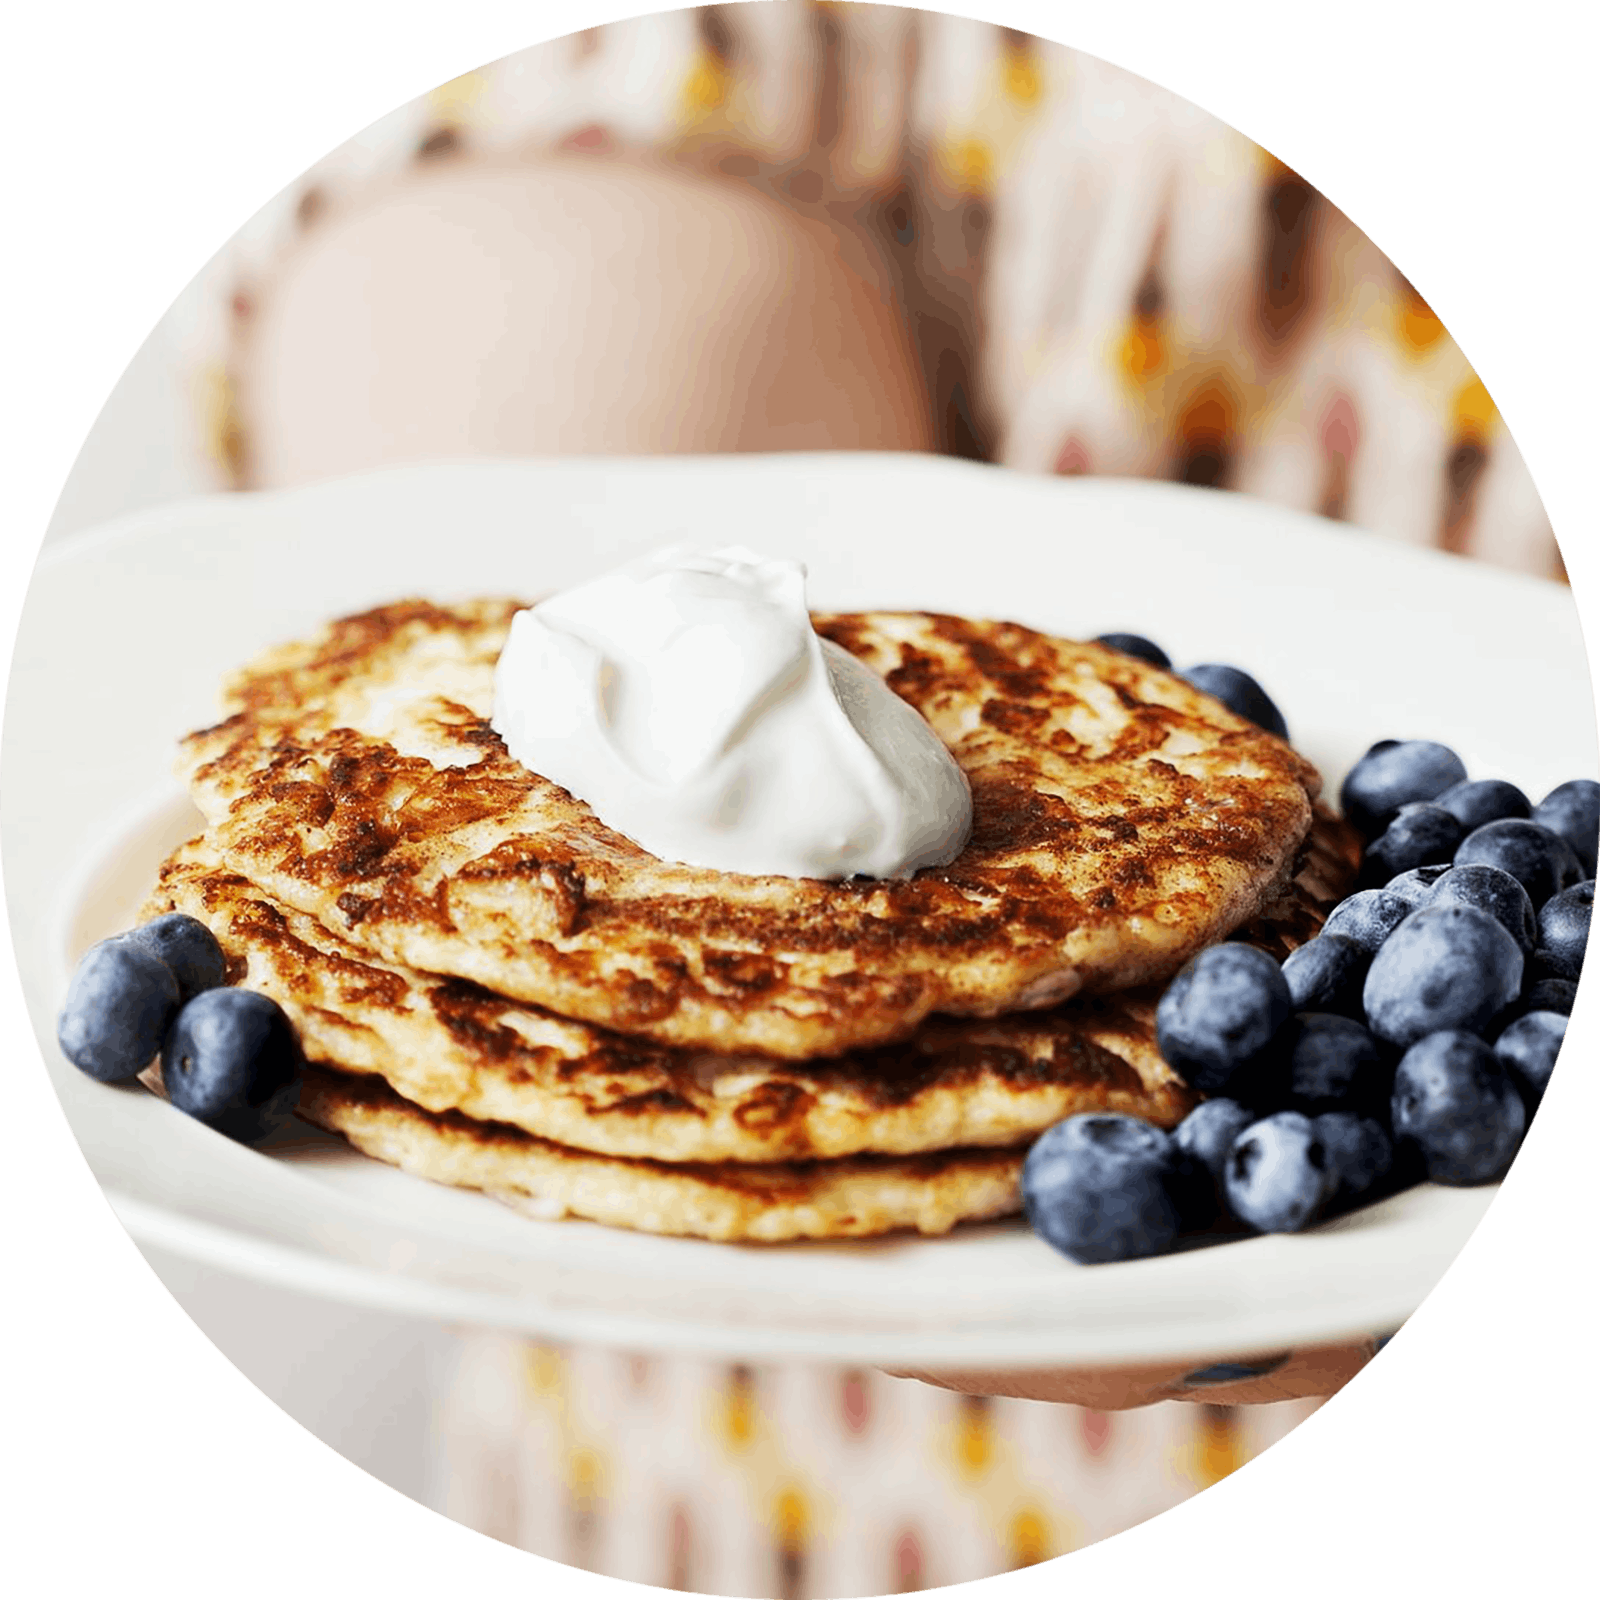 Low-carb pancakes